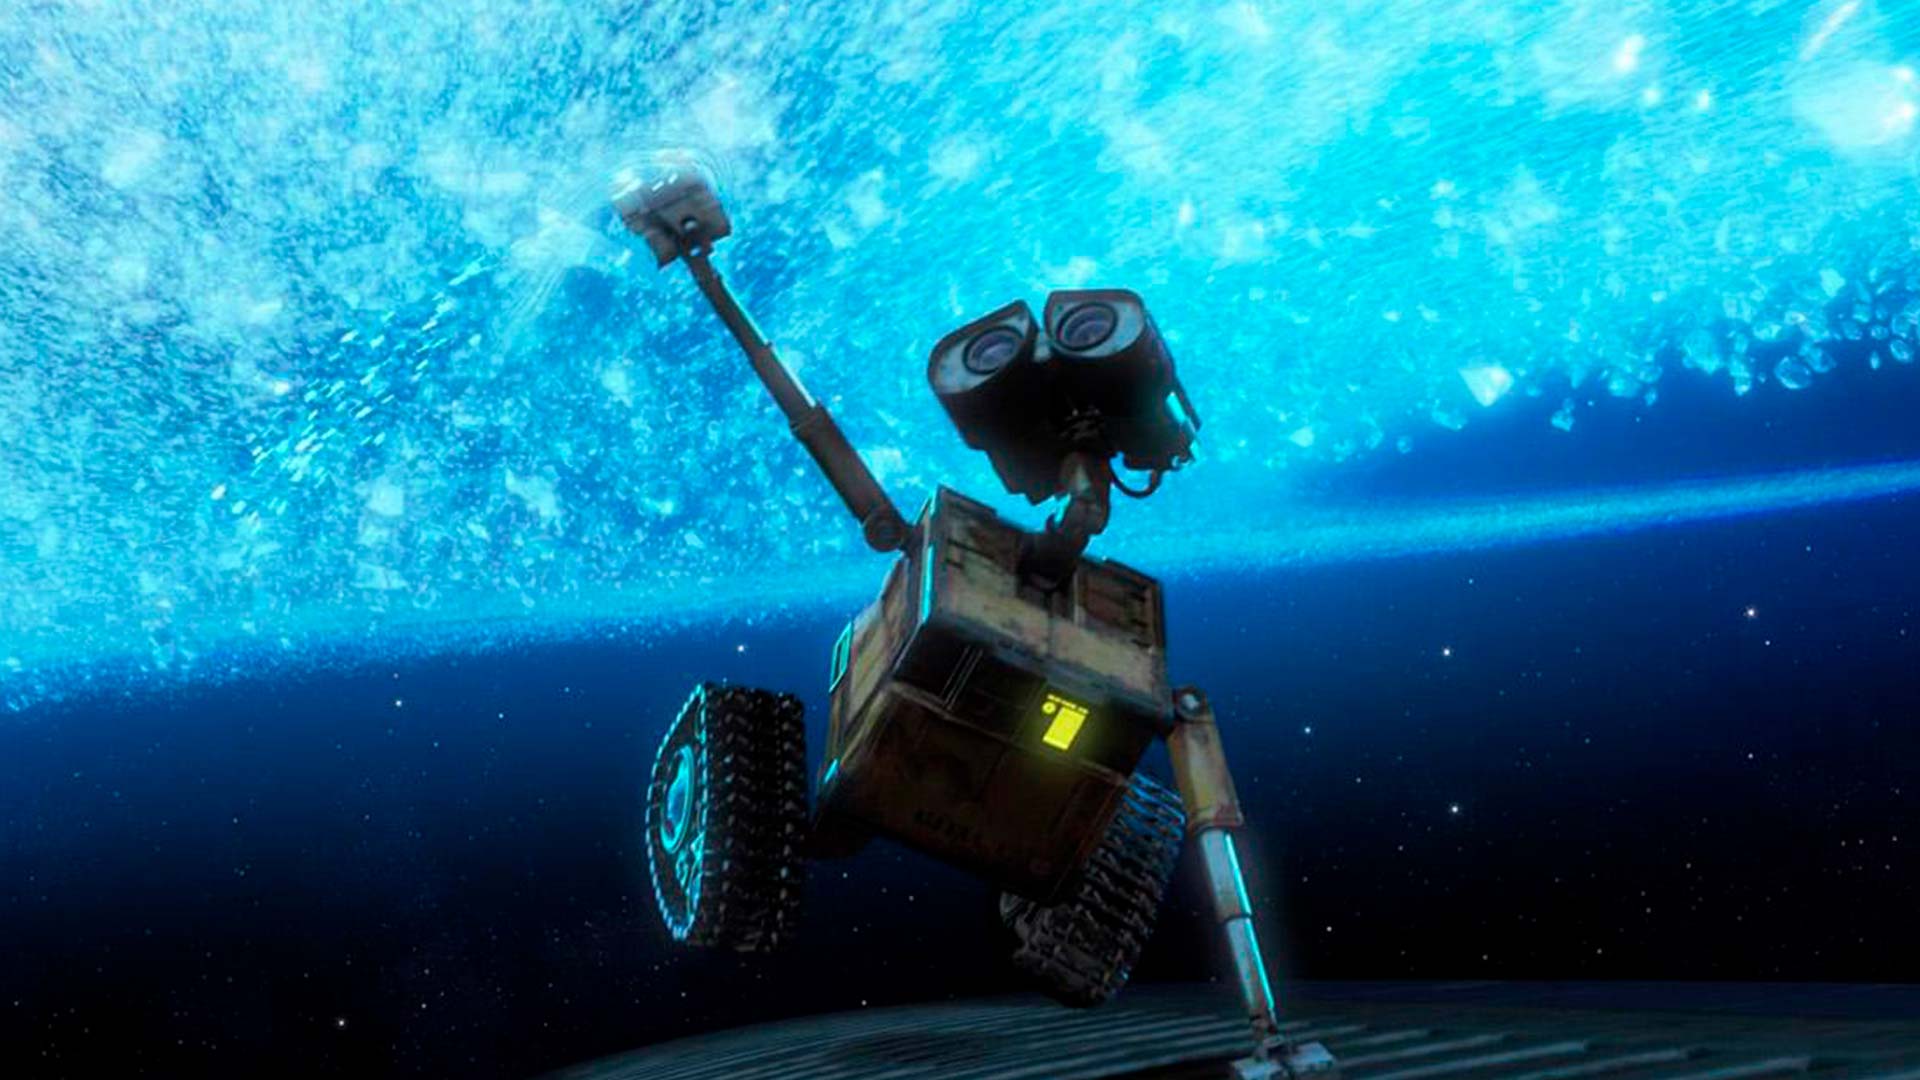 Filmes sobre preservação do meio ambiente: cena do filme 'Wall-E', em que há um robô que olha para cima, em que há um azul cintilante.